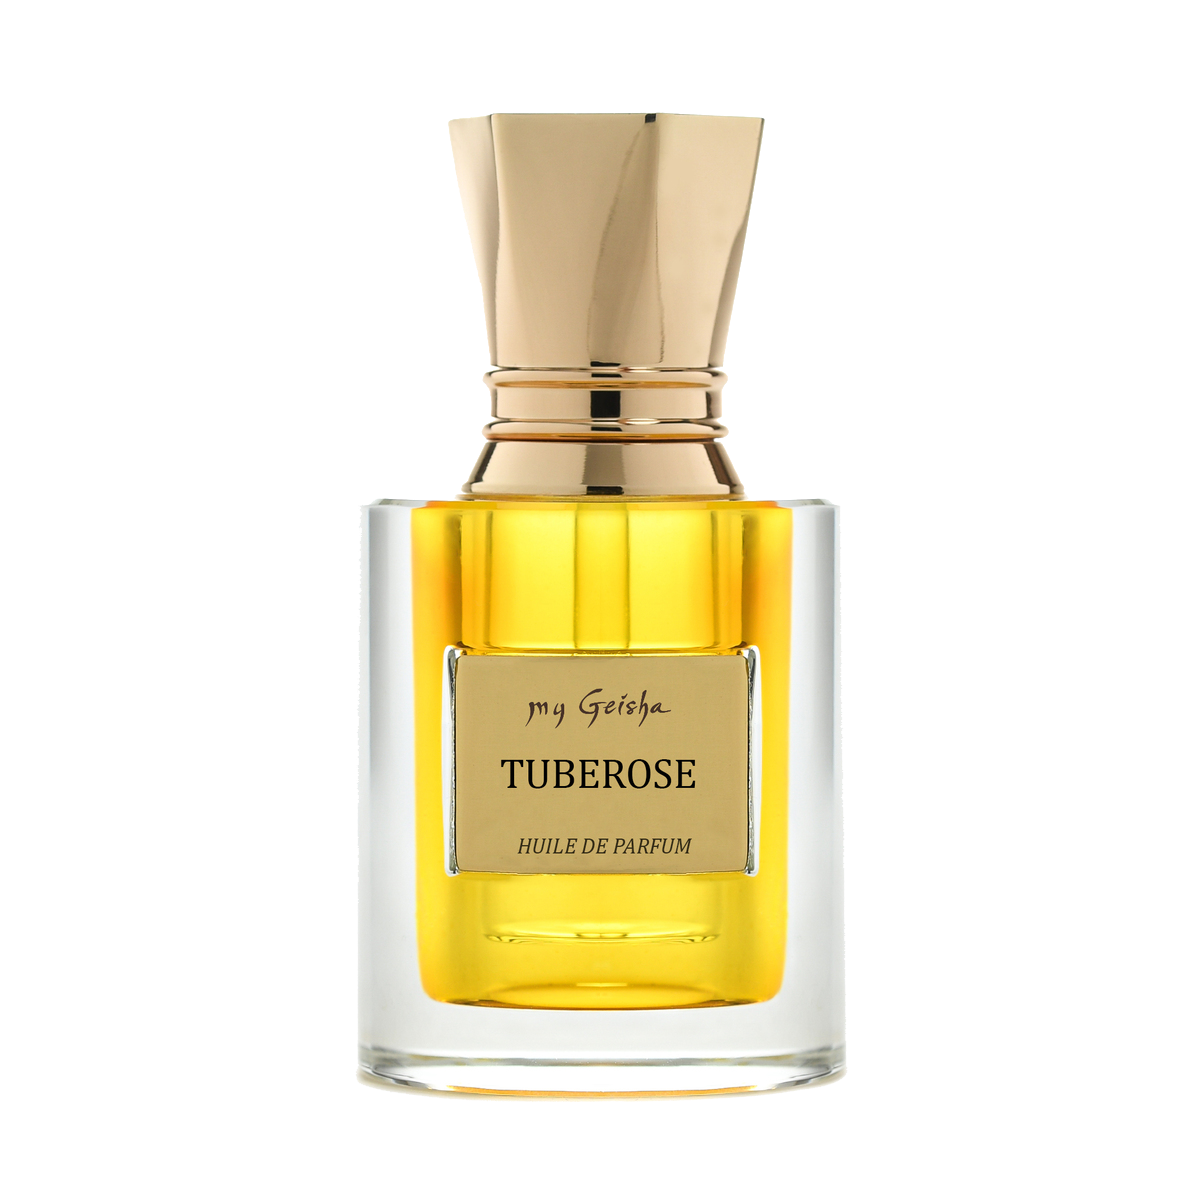 Huile de parfum TUBEROSE 14 ml, prodotto artigianale per la vendita diretta in Svizzera